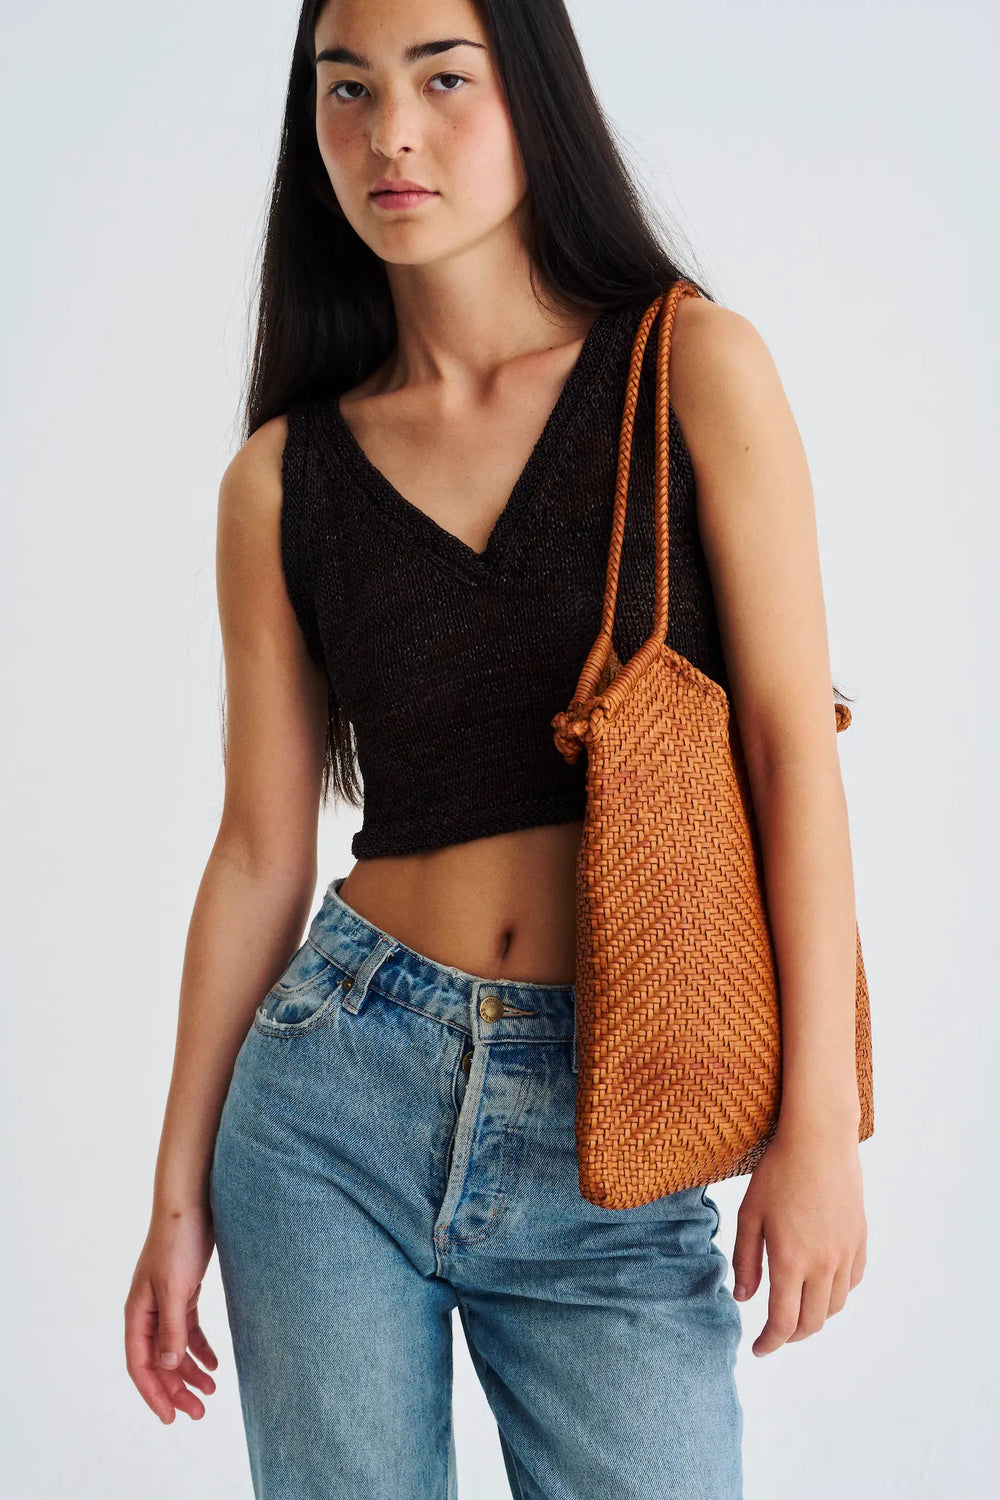 Dragon Diffusion - Minga Tote Tan - Woven Leather Bag Handmade